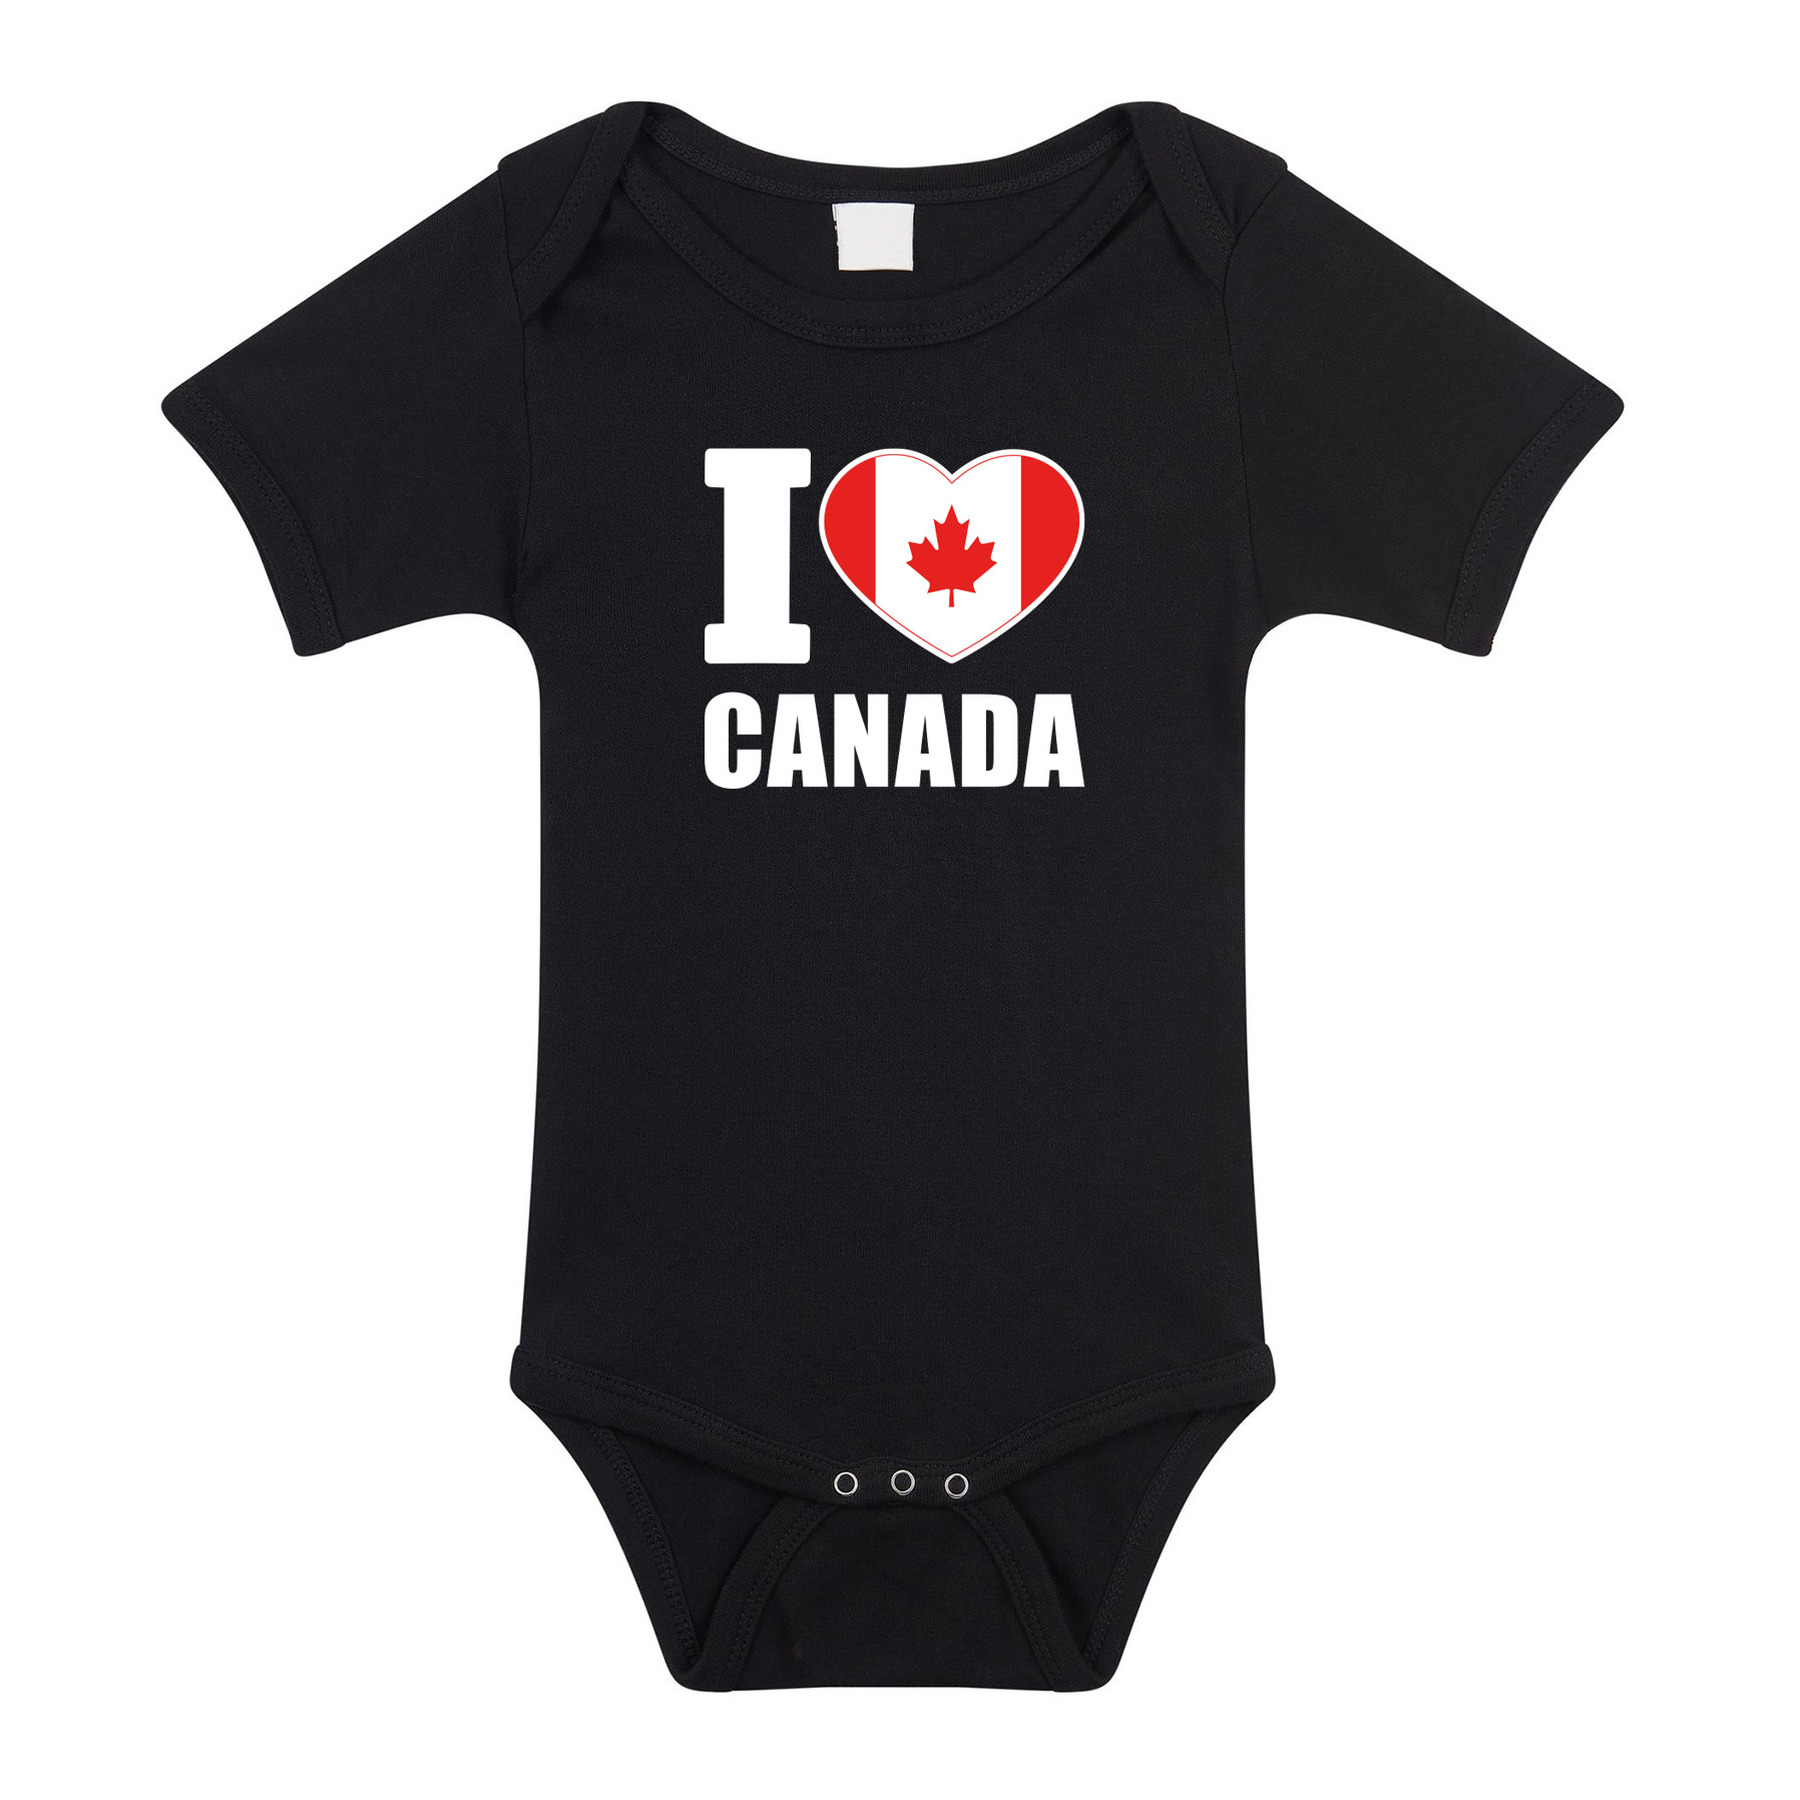 I love Canada baby rompertje zwart jongen/meisje